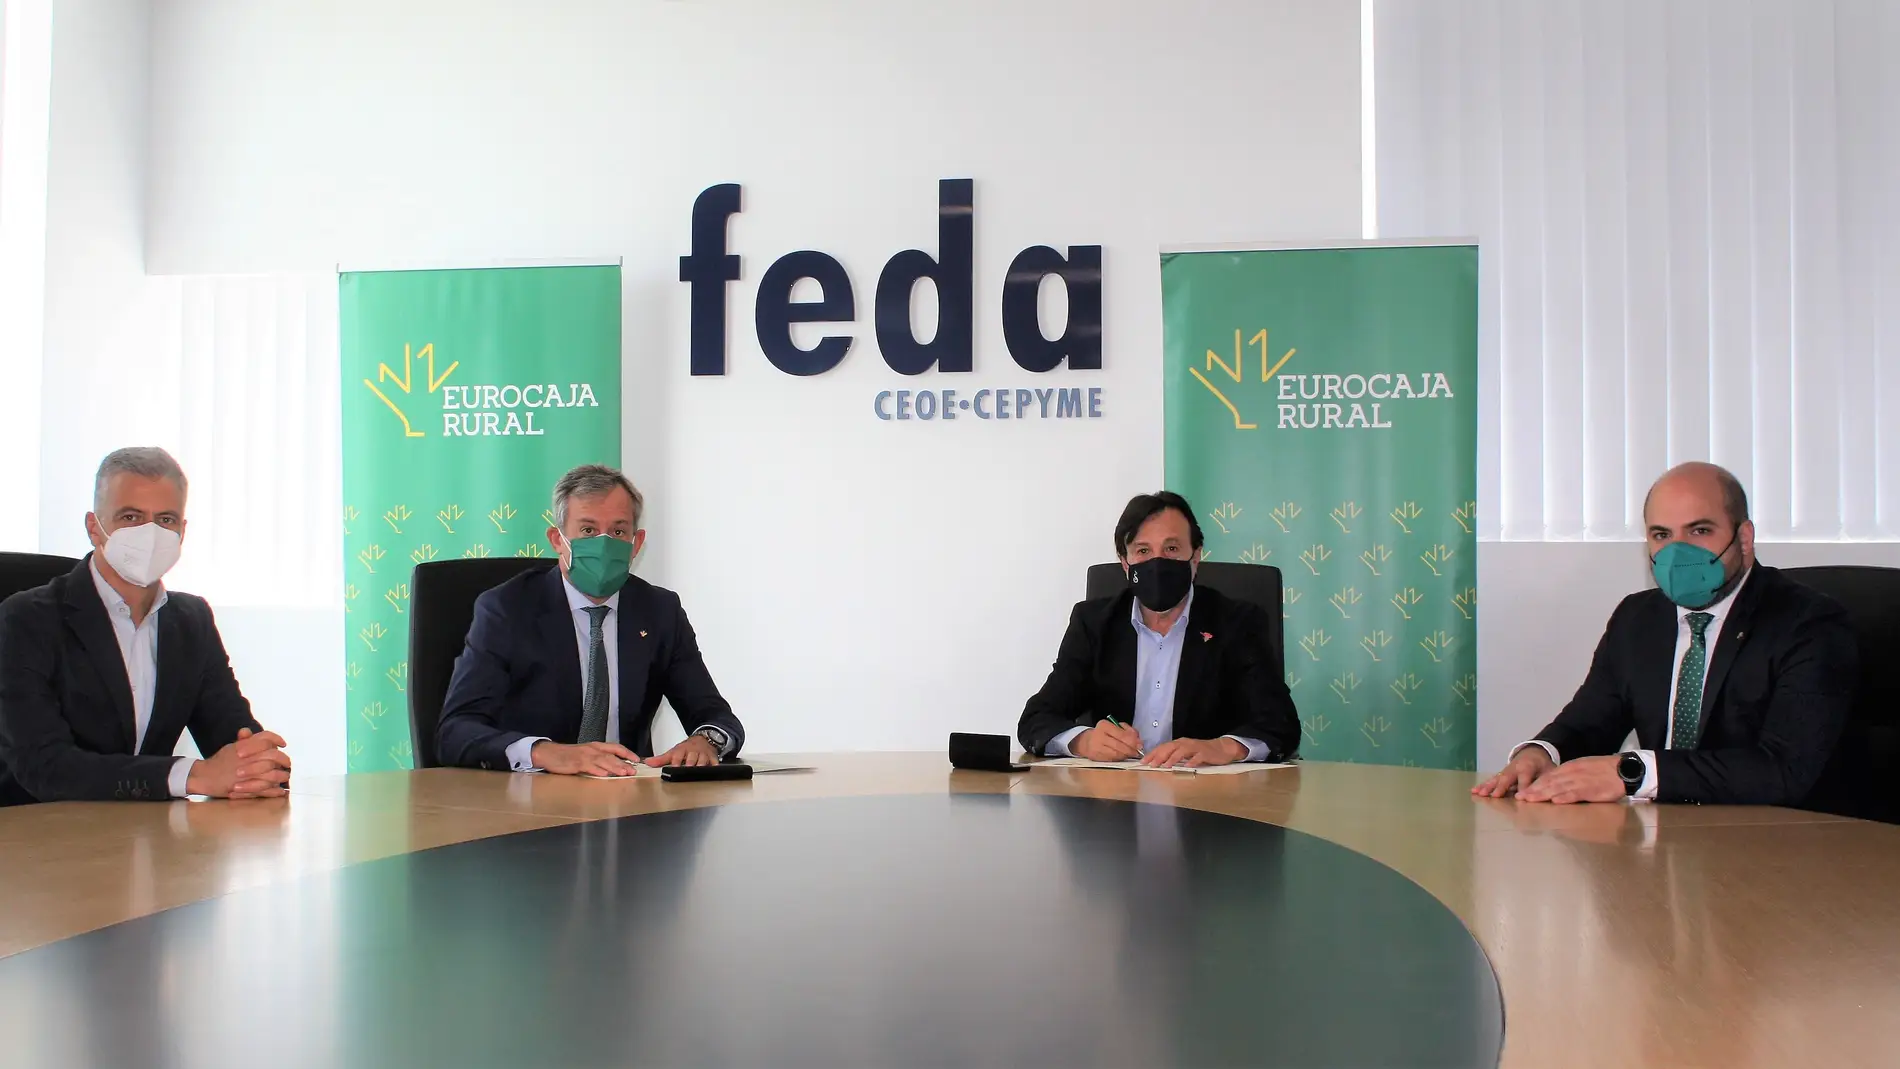 Convenio de colaboración entre Eurocaja Rural y FEDA